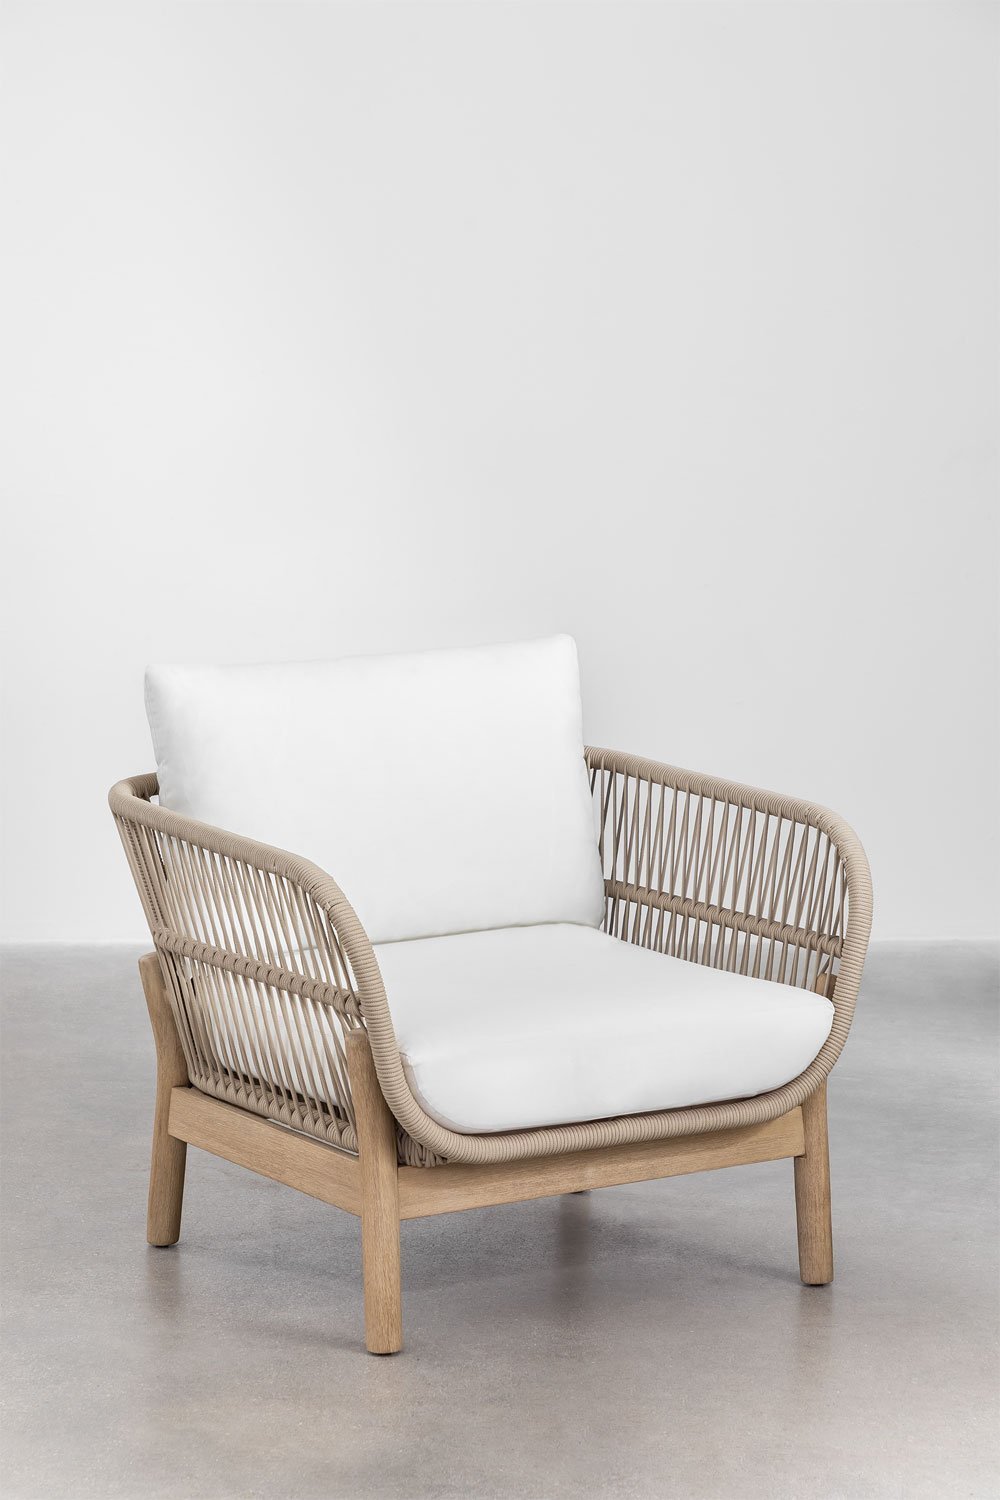 Karvia fauteuil van aluminium en acaciahout, galerij beeld 1